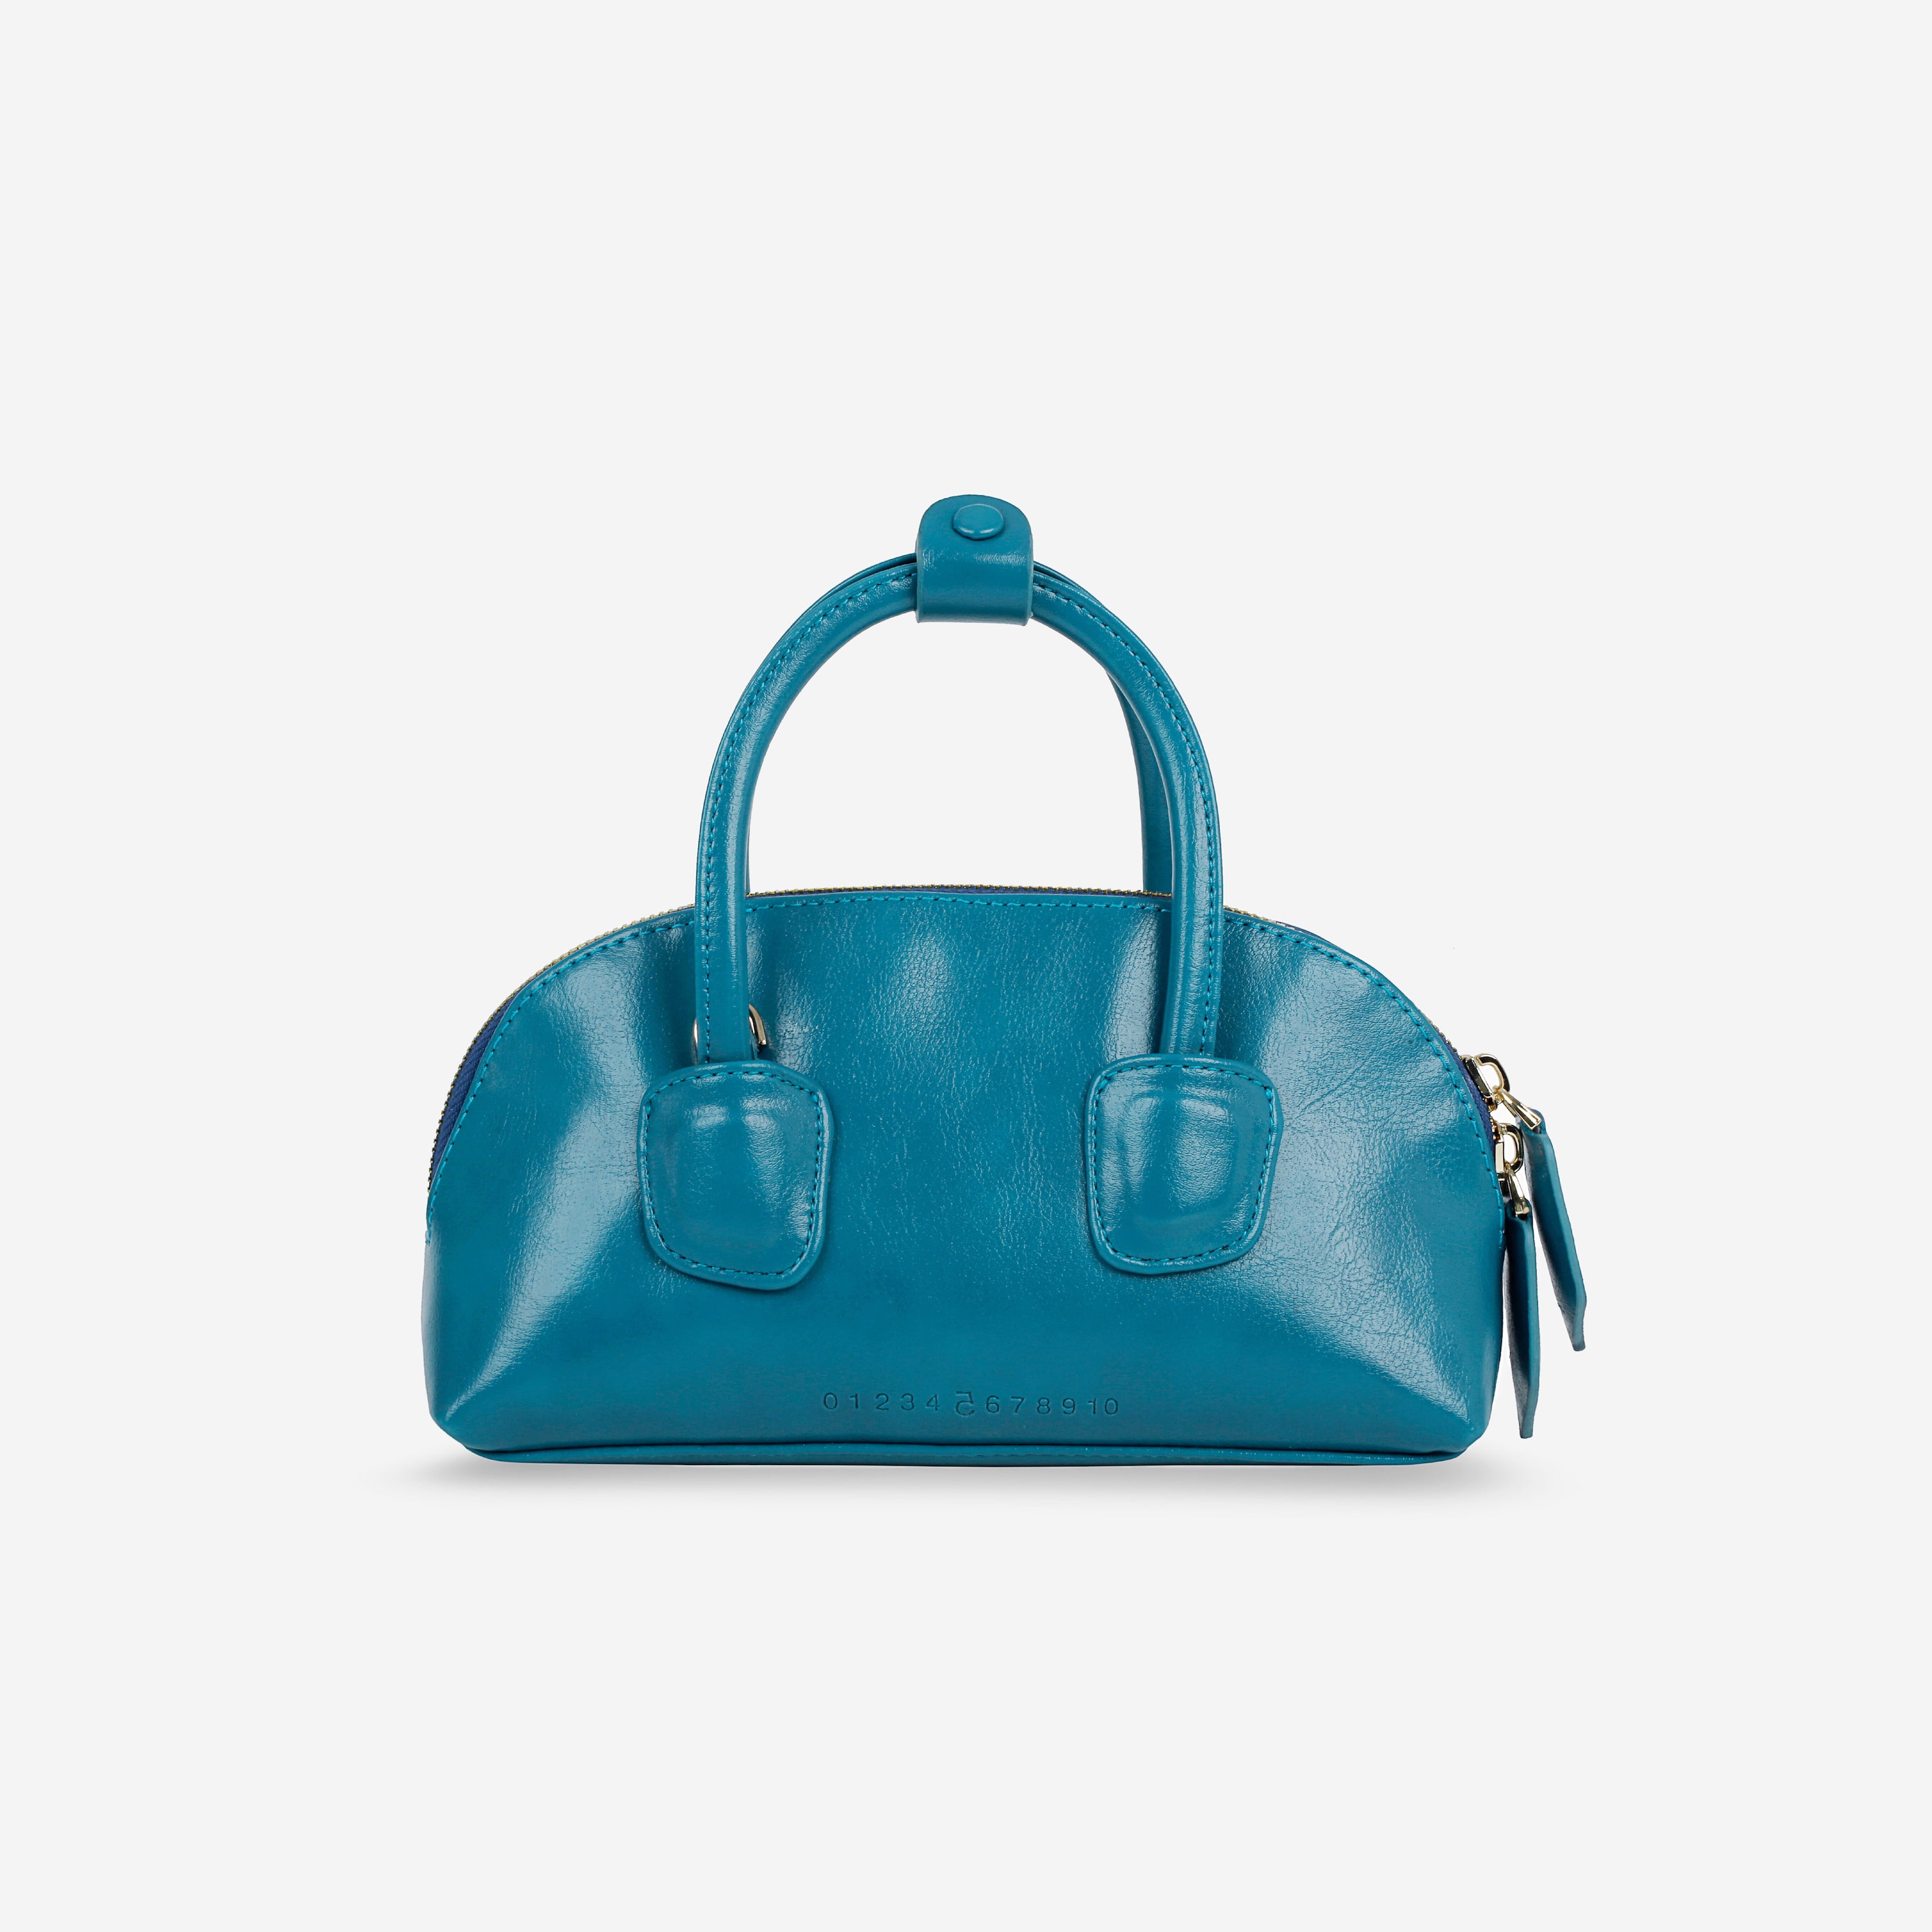 Túi xách TACOS màu xanh dương size nhỏ (S)